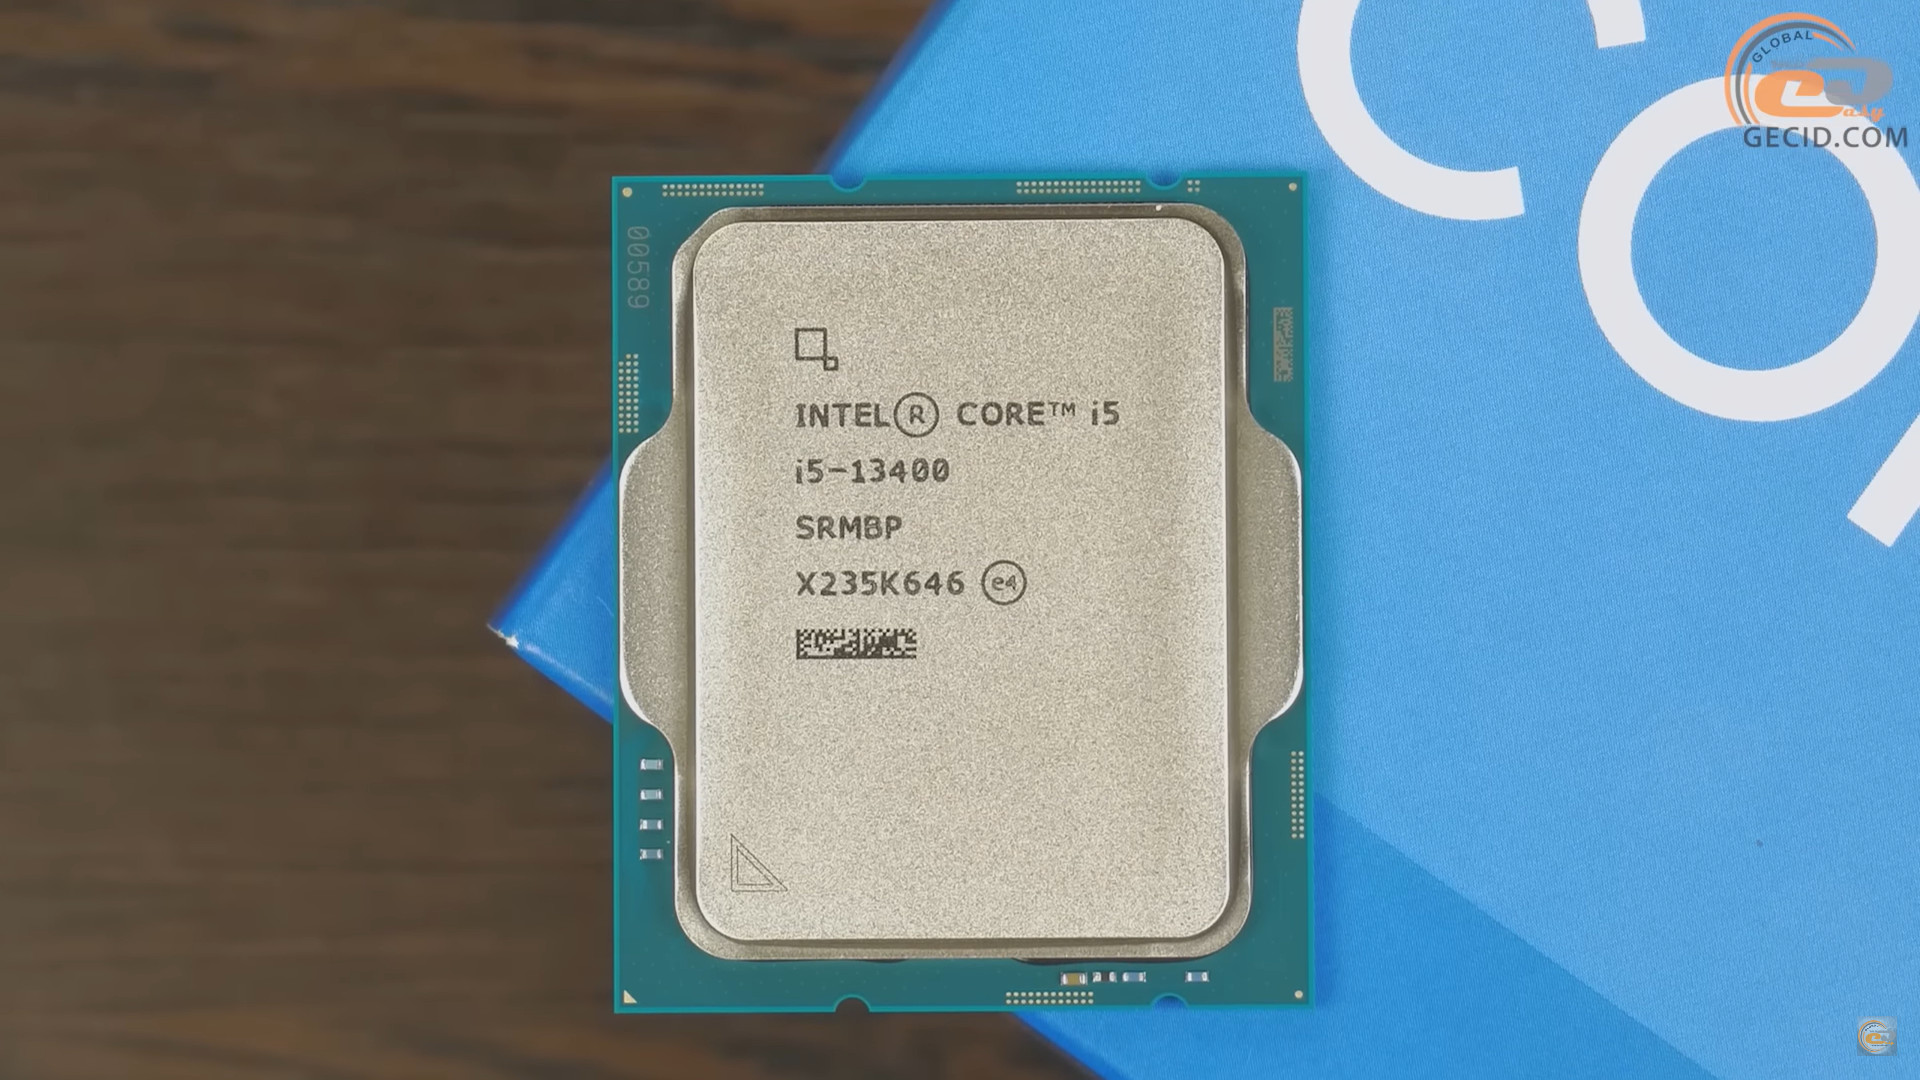 Разрядность в процессоре Intel(r) Core(TM) i5-8400. I5 13400 в Моем компьютере. R5 7600